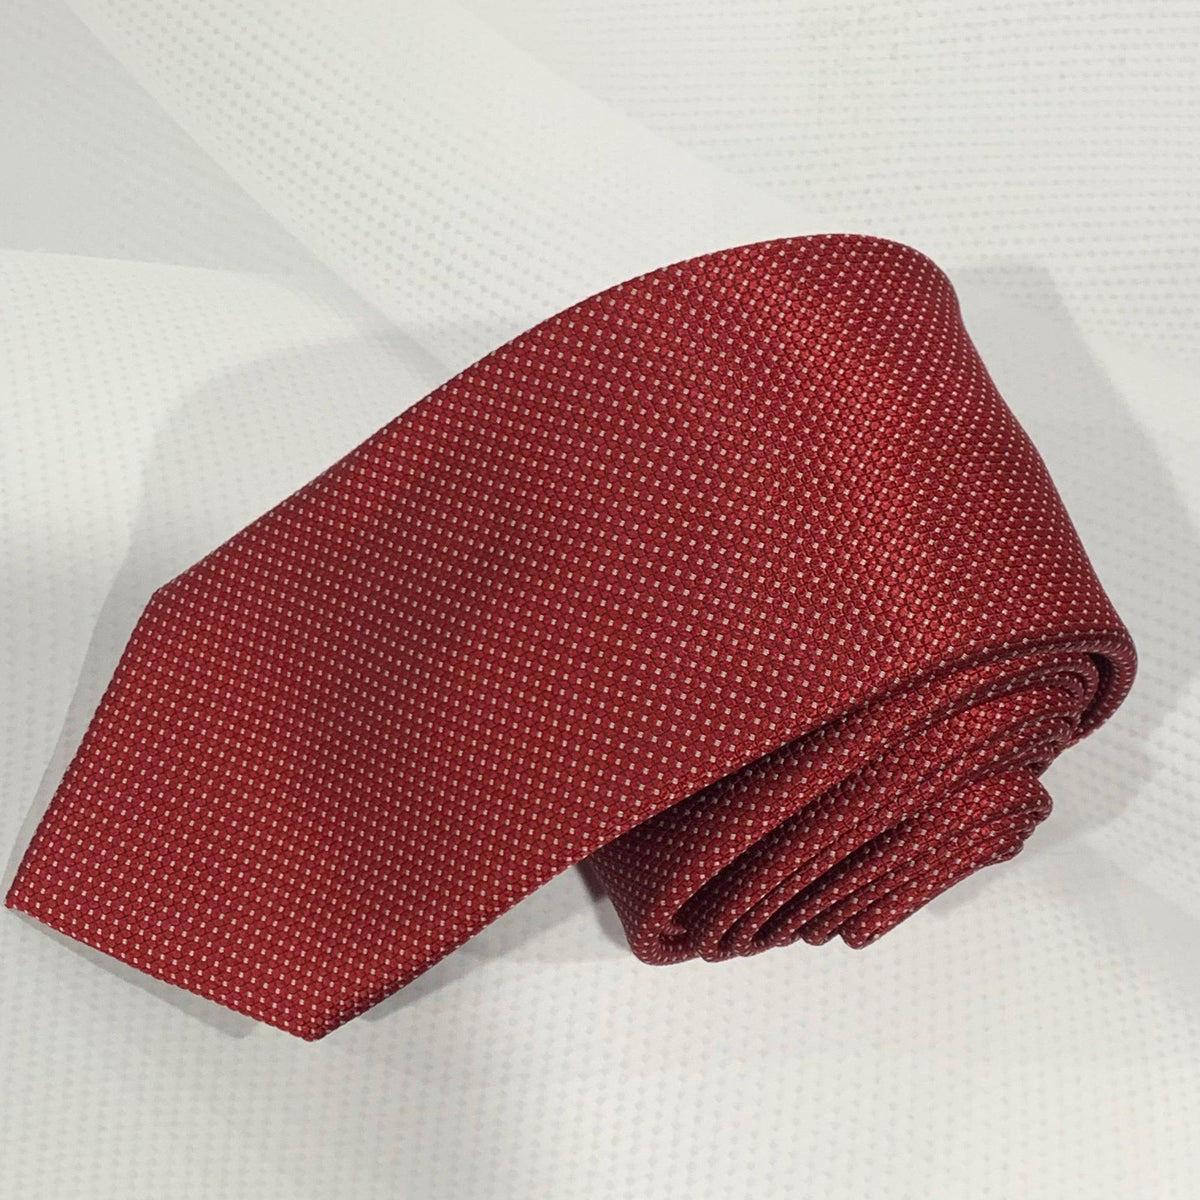 X15515-1 Silk Tie - Harrys for Menswear